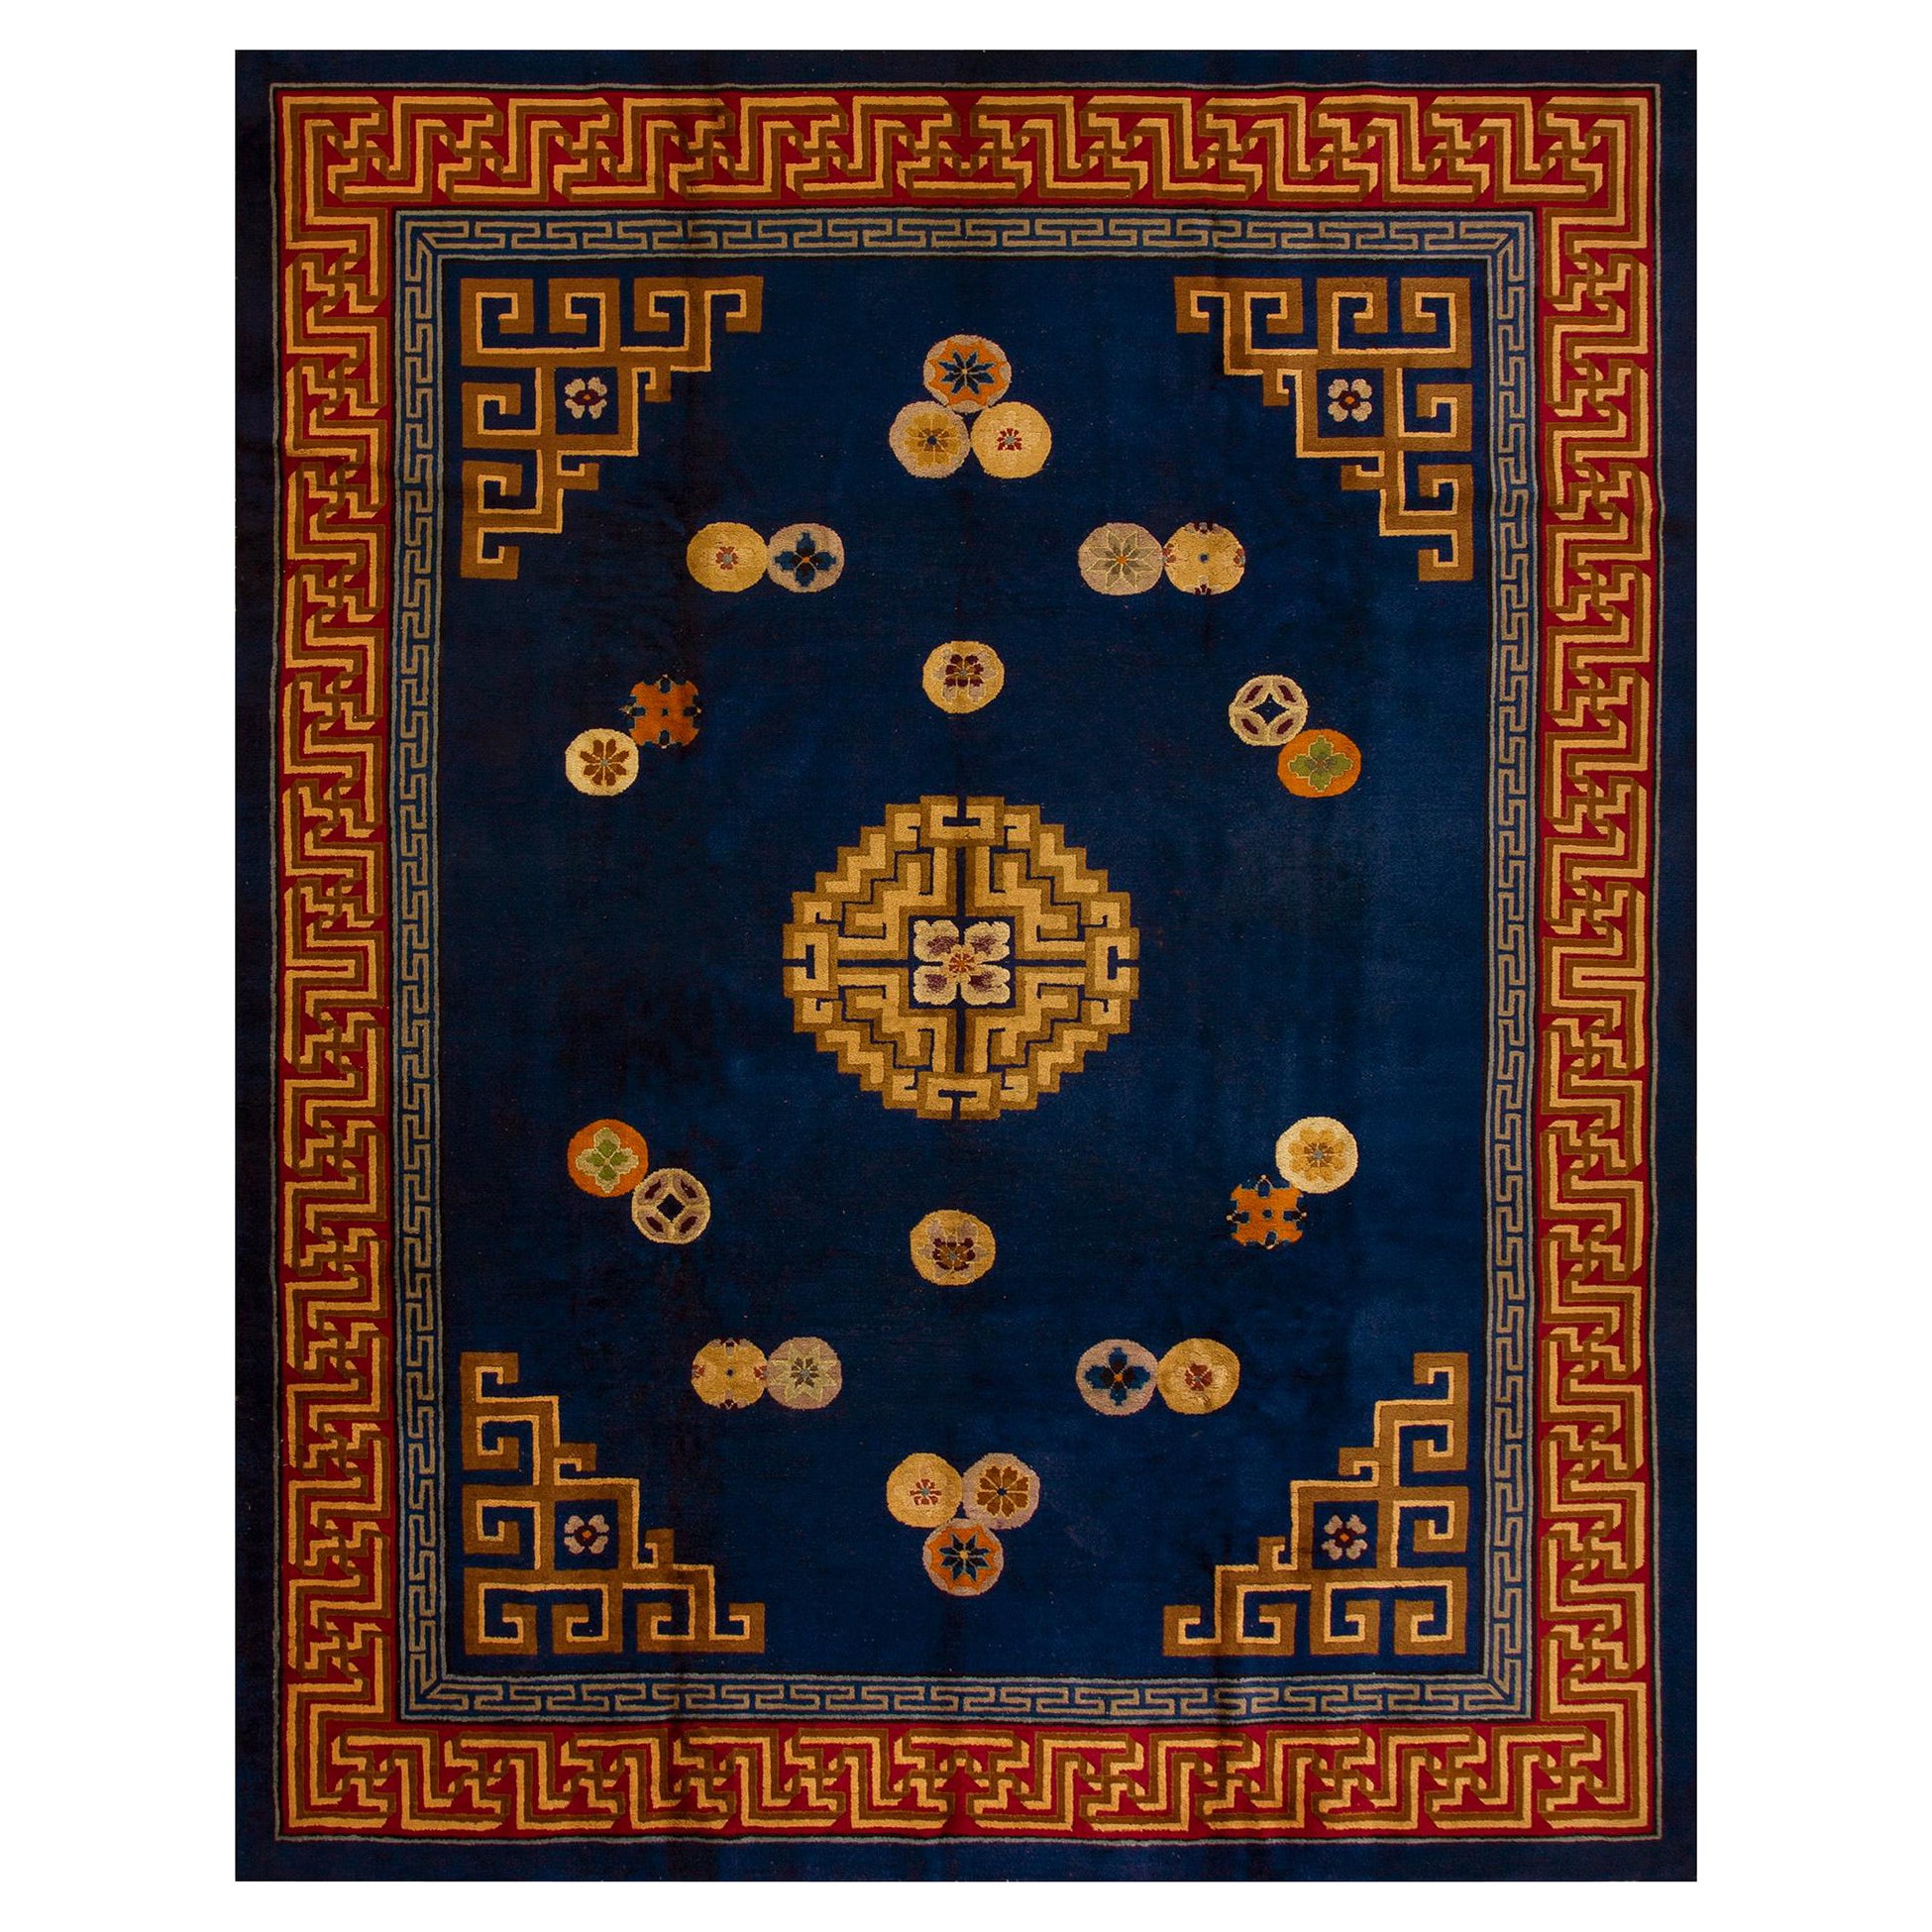 Chinesischer Art-Déco-Teppich aus den 1920er Jahren ( 9' 2''x 12' - 280 x 365 cm)